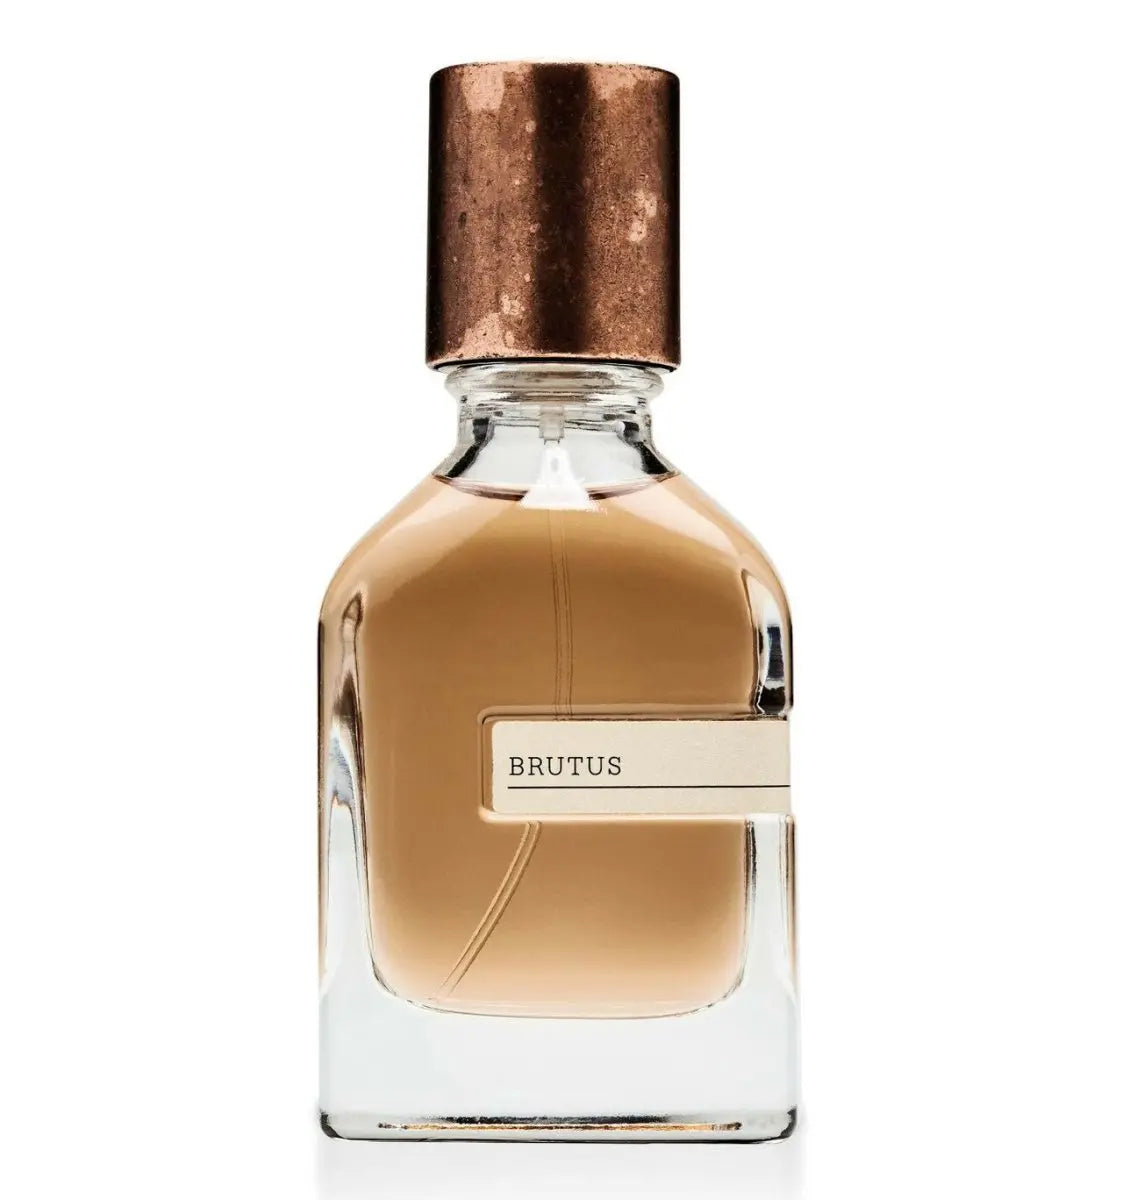 Orto parisi Brutus Extrait de parfum - 50 мл.